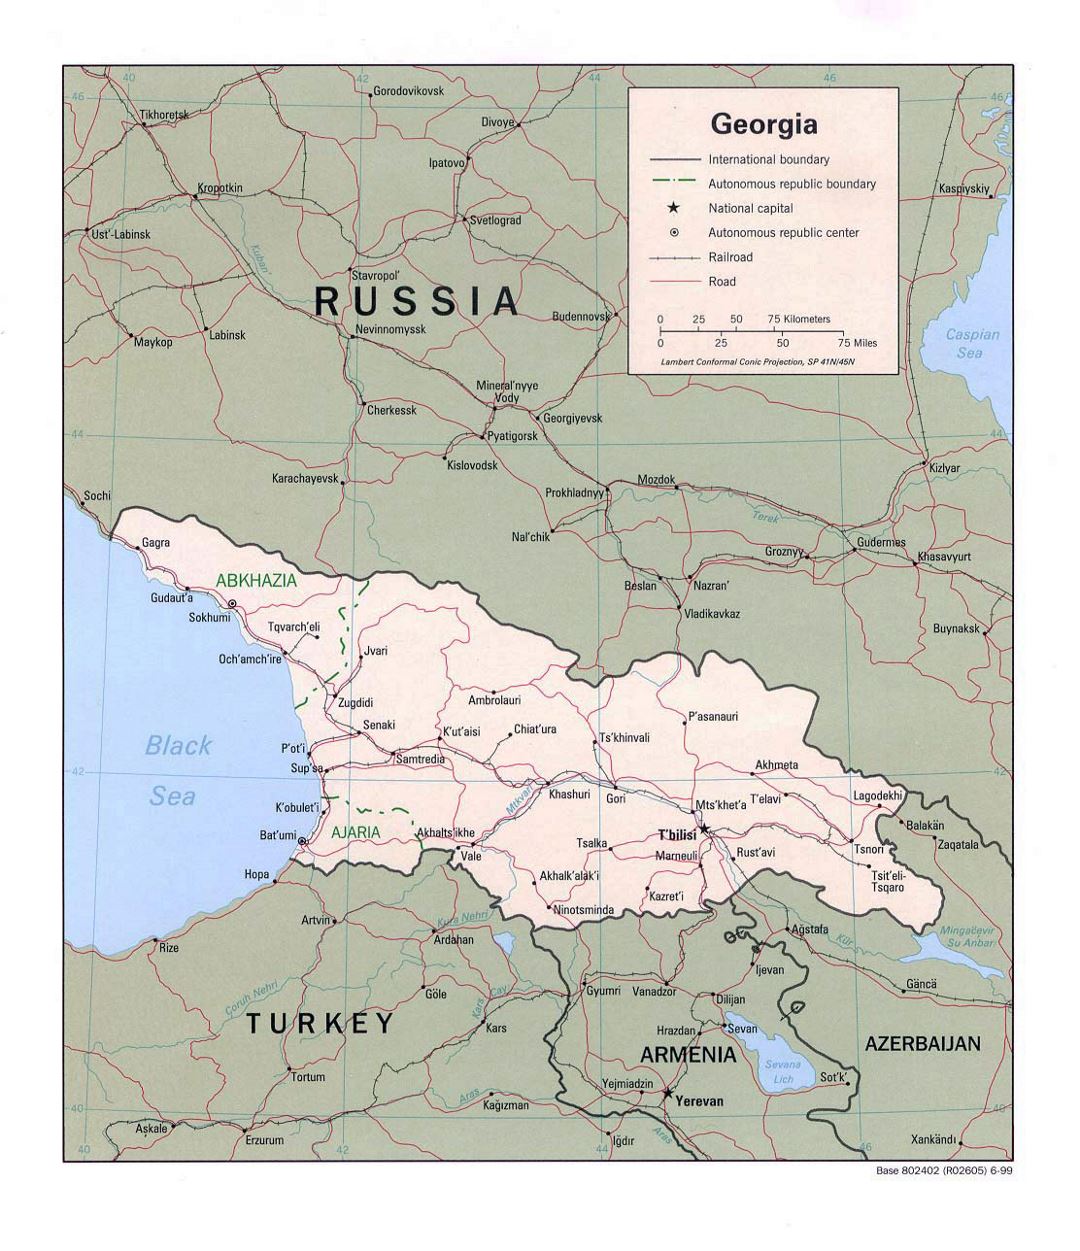 Detallado mapa político de Georgia con carreteras, ferrocarriles y principales ciudades - 1999